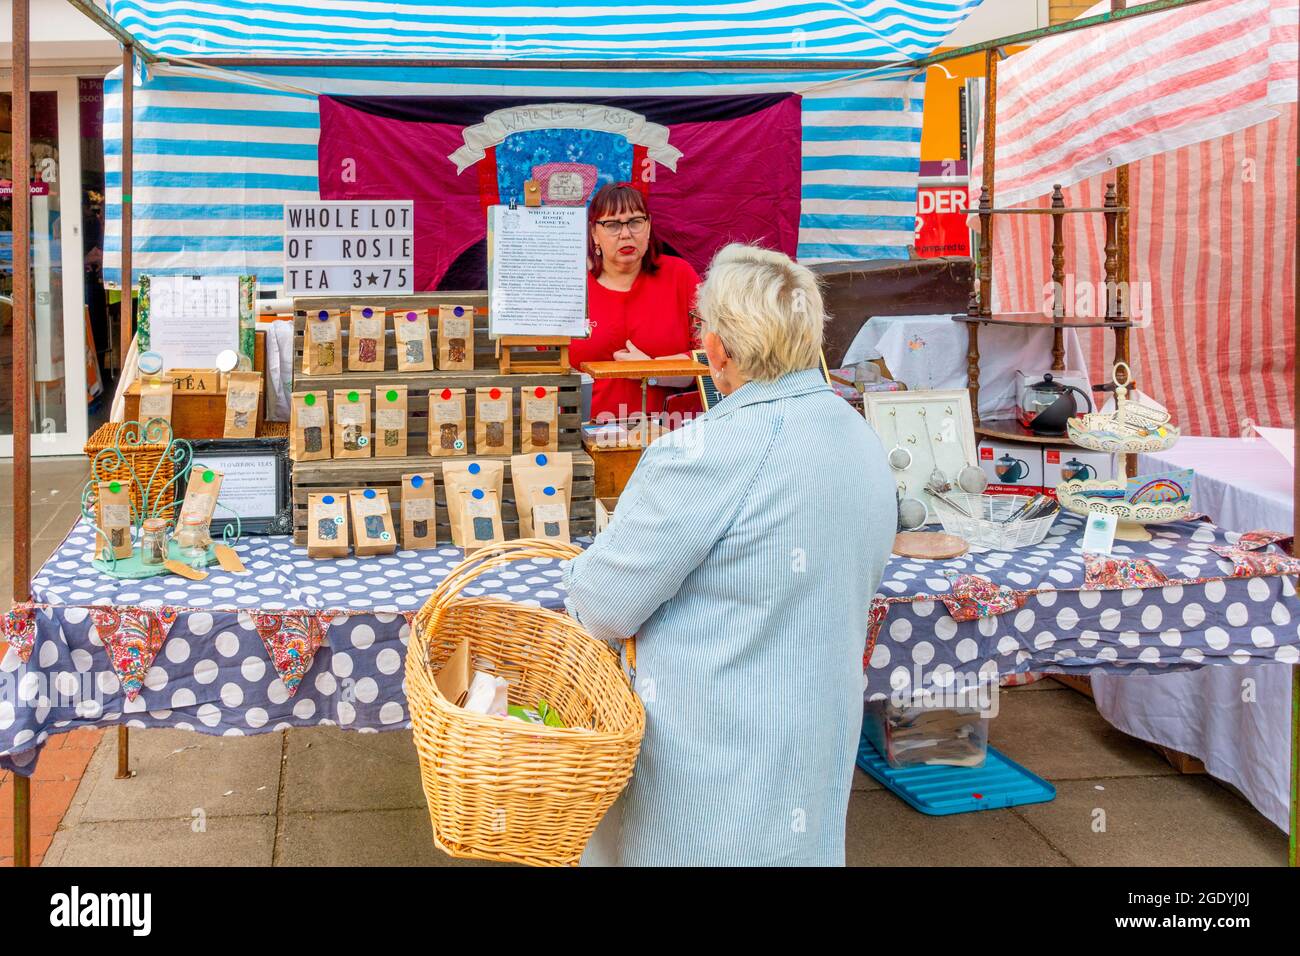 Eine Frau, die mit einem Kunden auf einem britischen Bauernmarkt spricht und mehrere Sorten von Rosie Loose REA verkauft Stockfoto